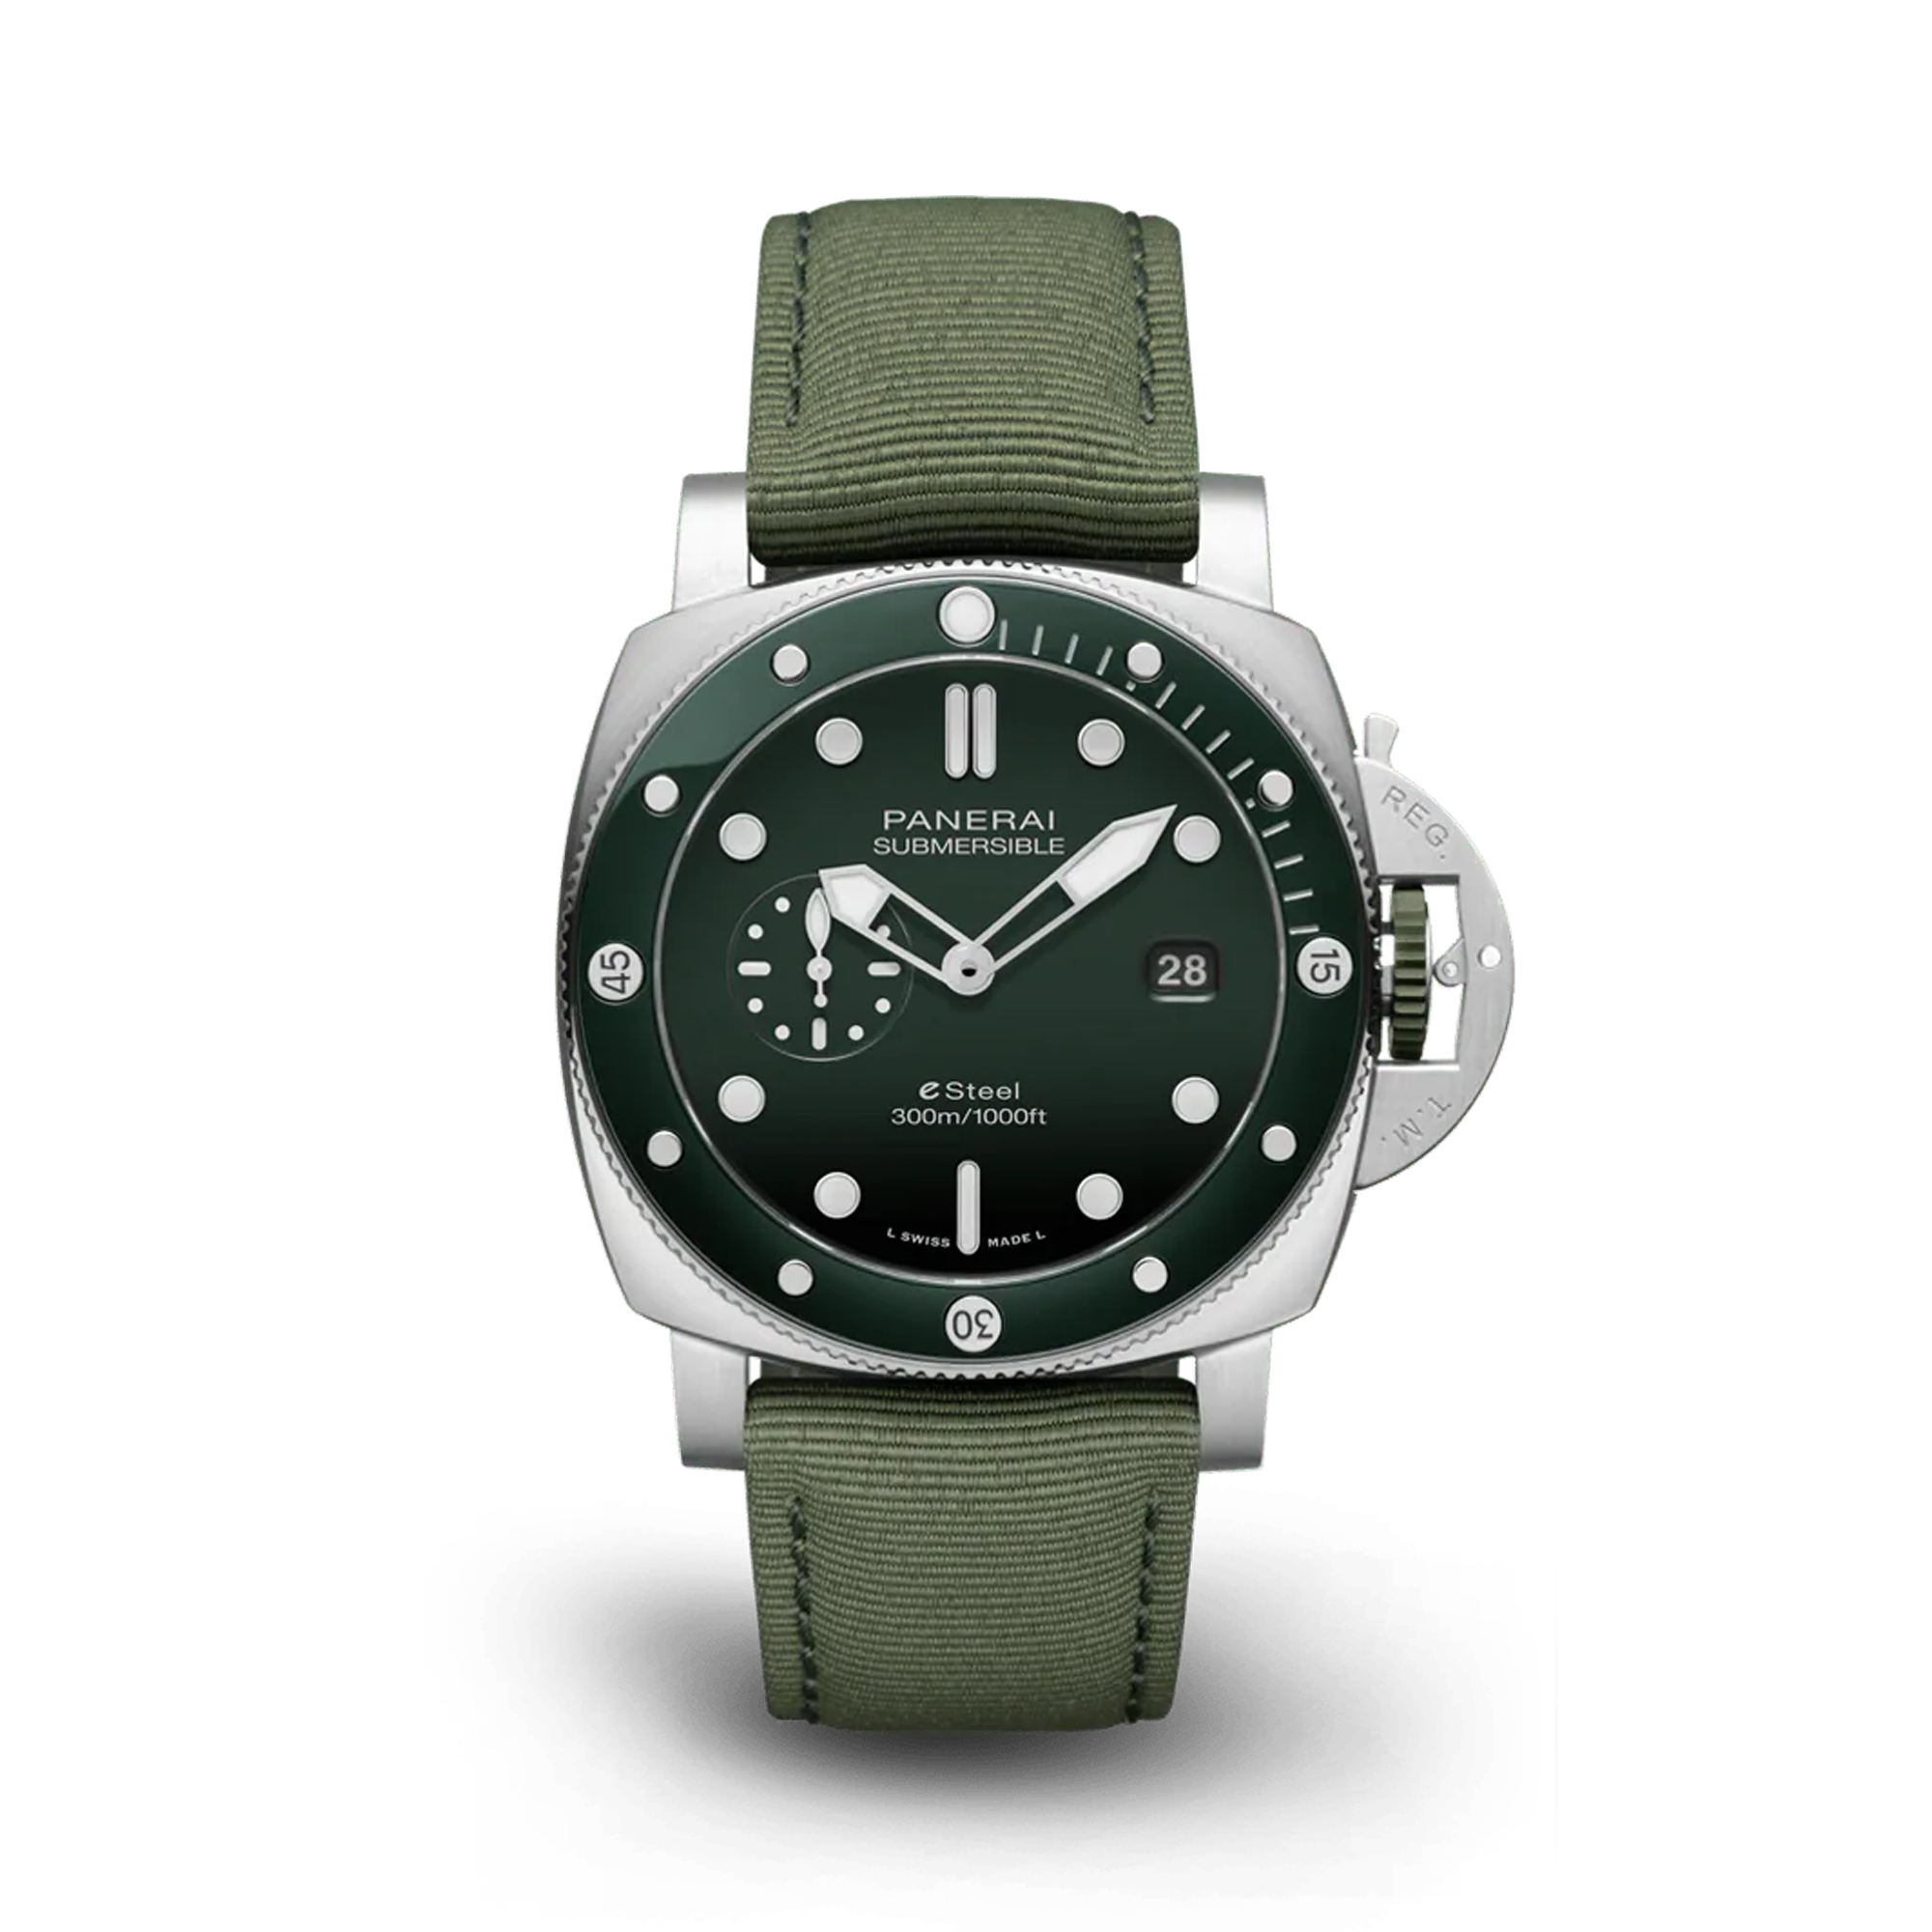 Panerai Submersible QuarantaQuattro ESteel™ Verde Smeraldo 44mm, Green Dial, Baton Numerals_1